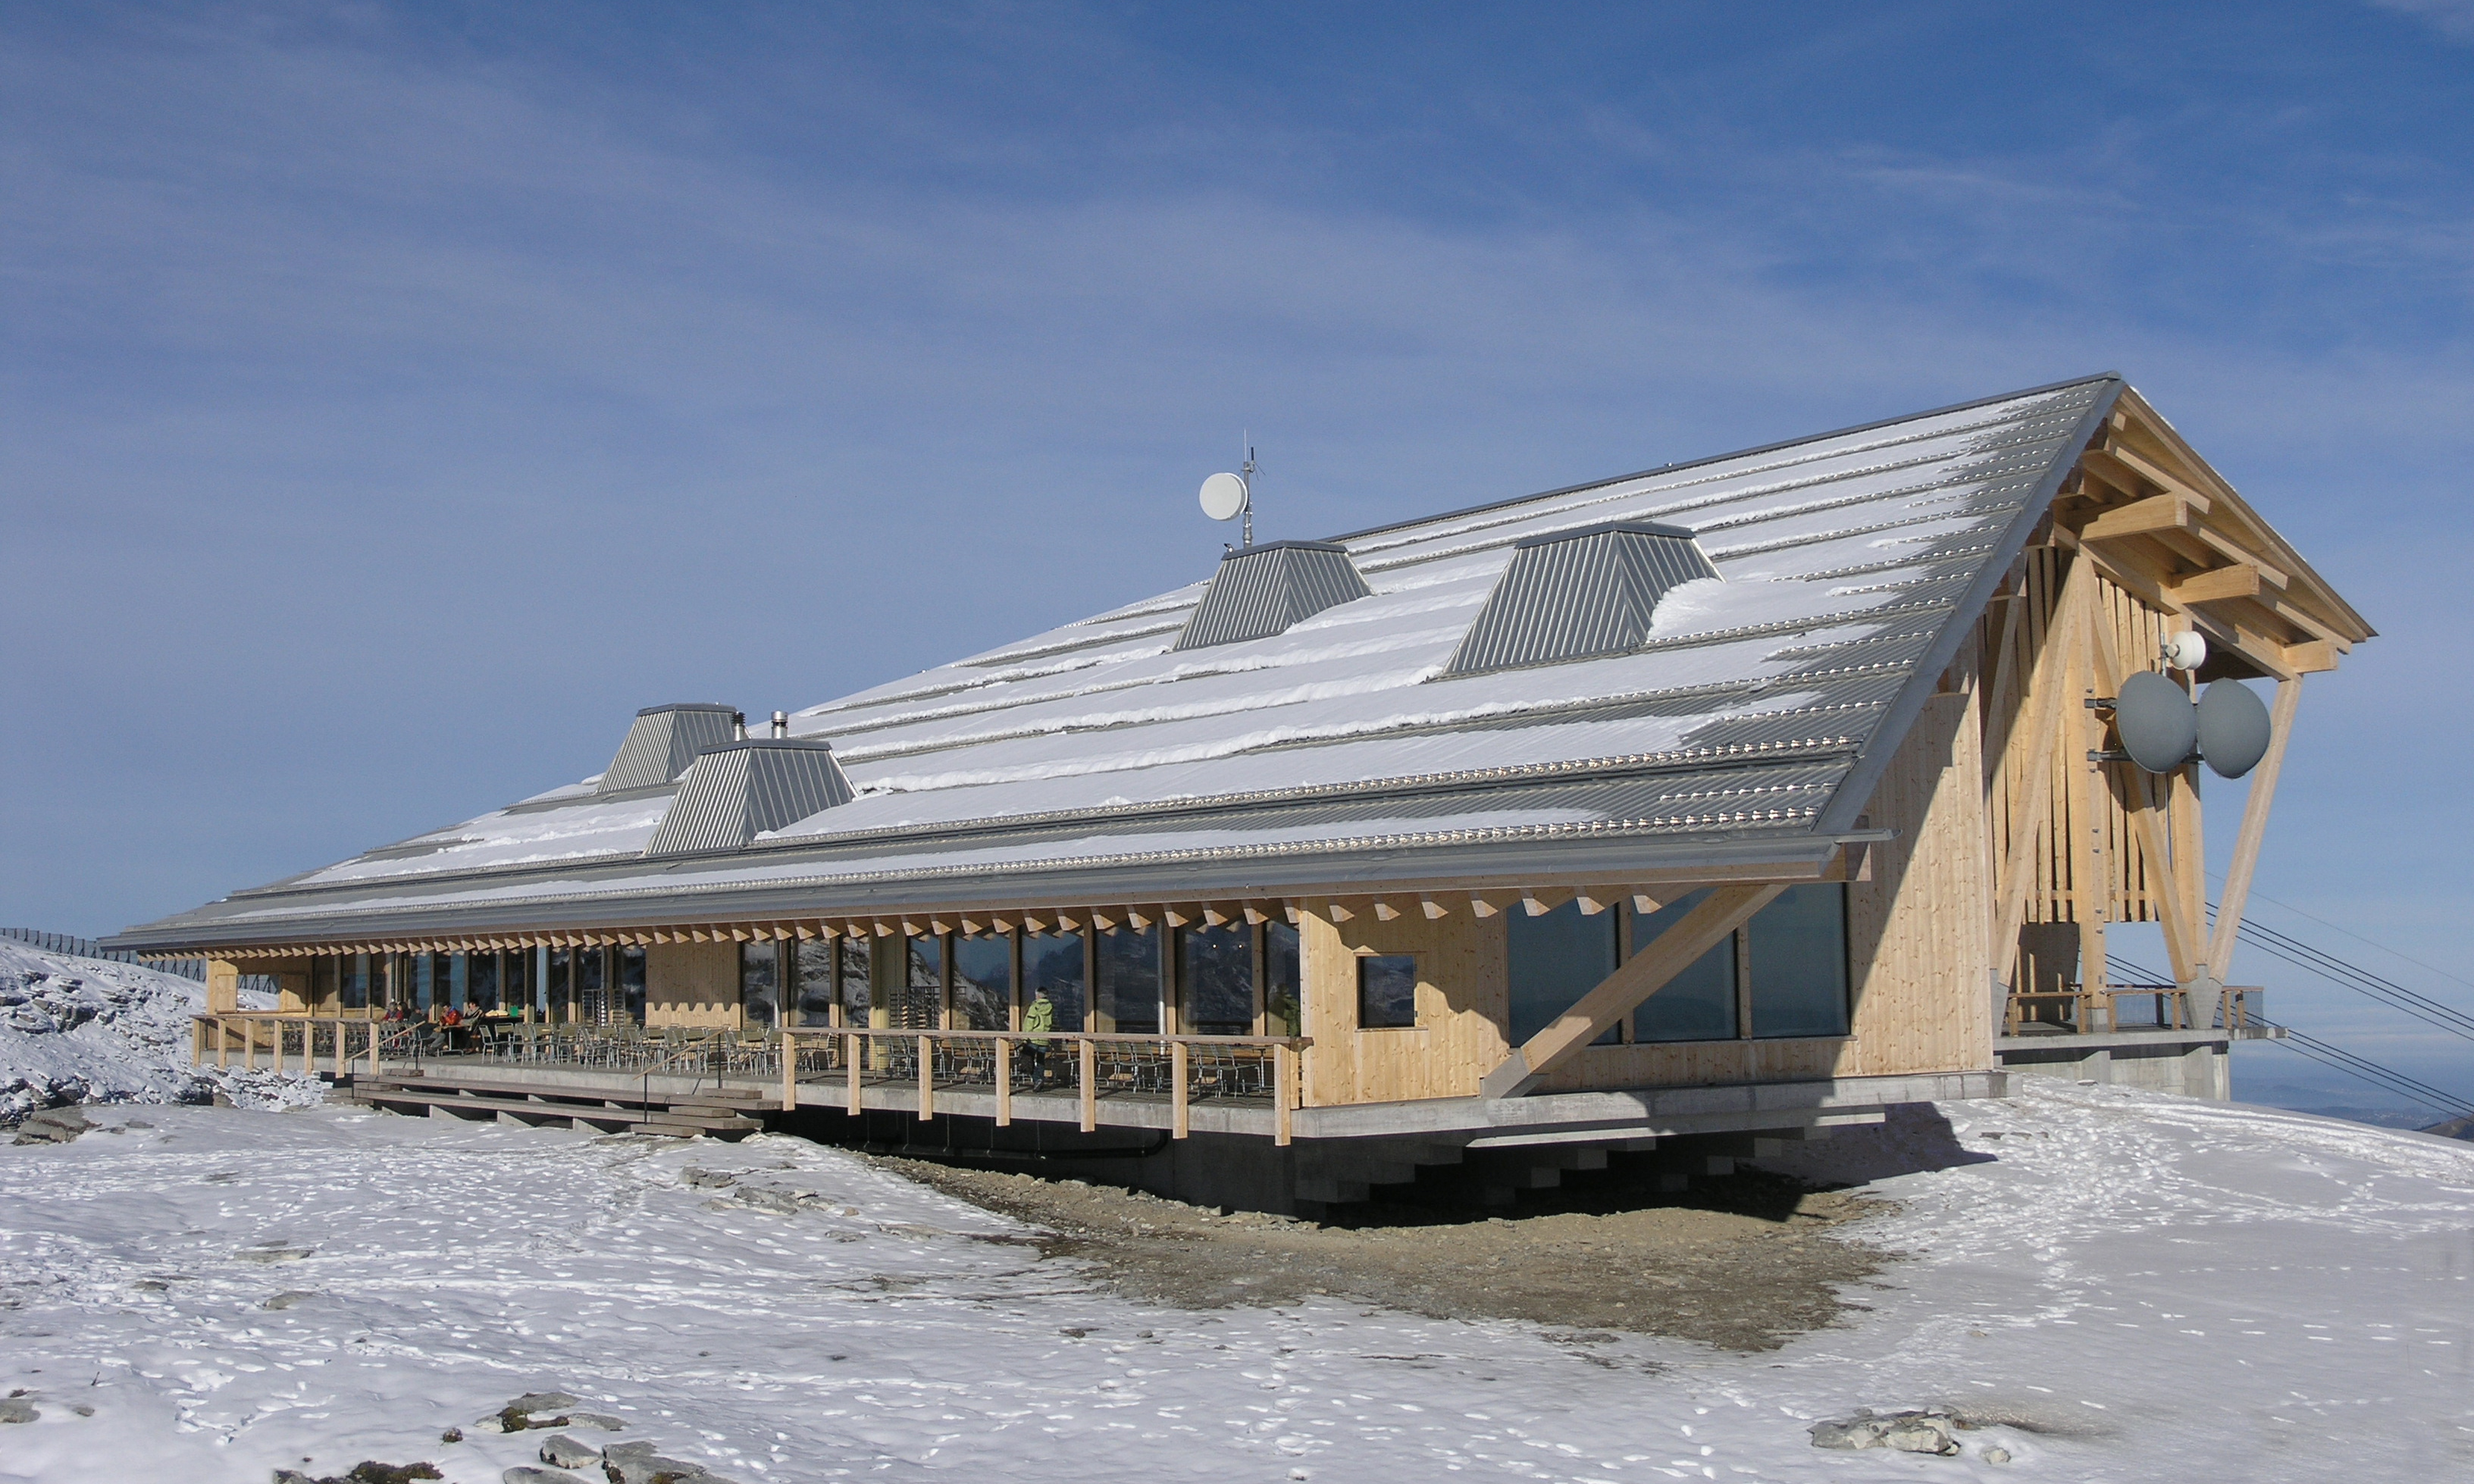 Aussenansicht Berggasthaus Chäserrugg mit Schnee auf dem Dach und schneebedecktem Boden. 